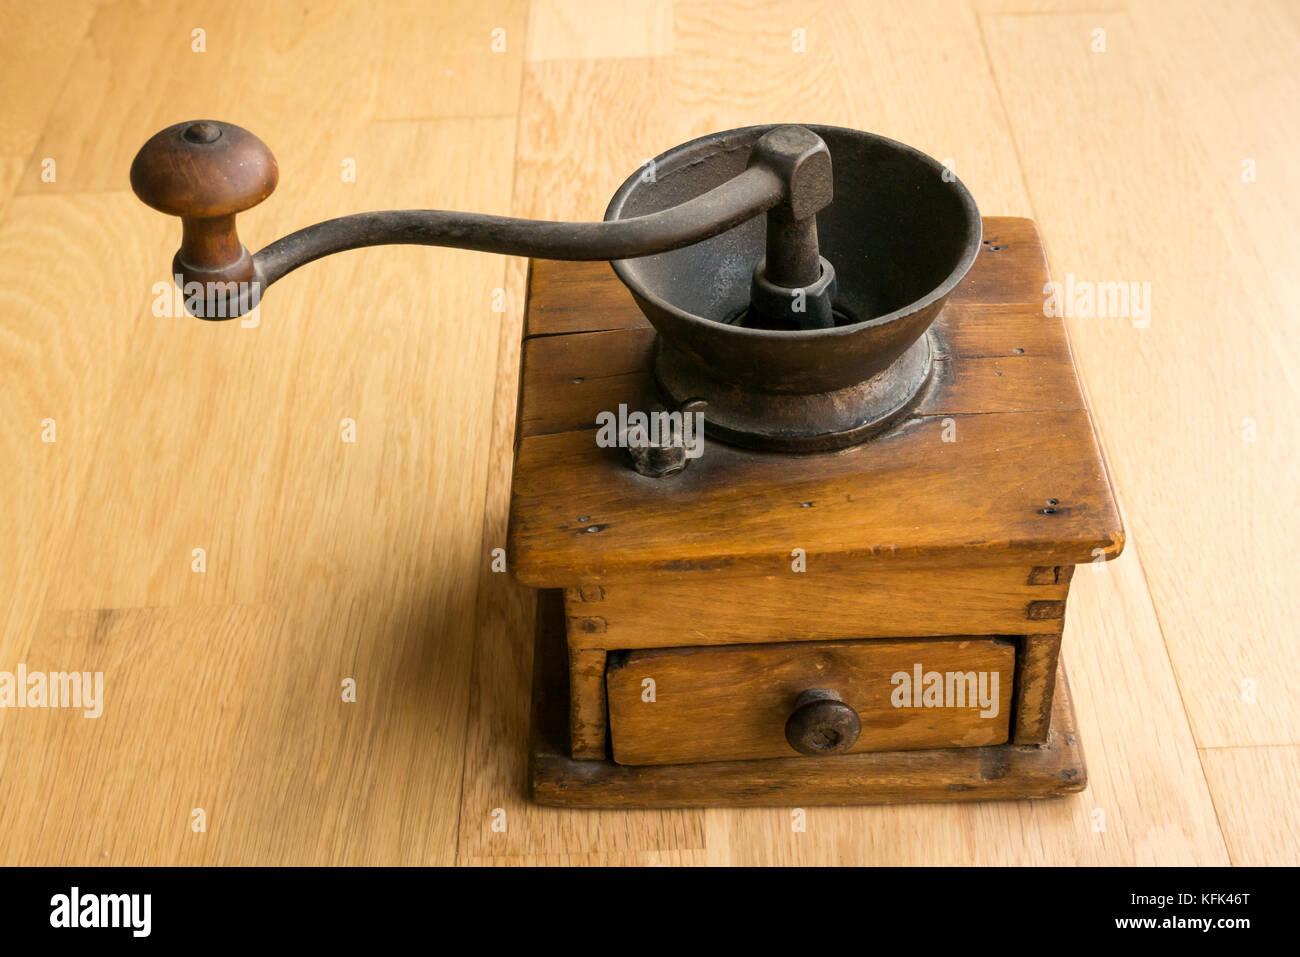 Utensilios de cocina, herramientas y equipos de madera sobre fondo  monocromo. 3d renderizado de herramientas y accesorios de cocina para el  hogar Fotografía de stock - Alamy